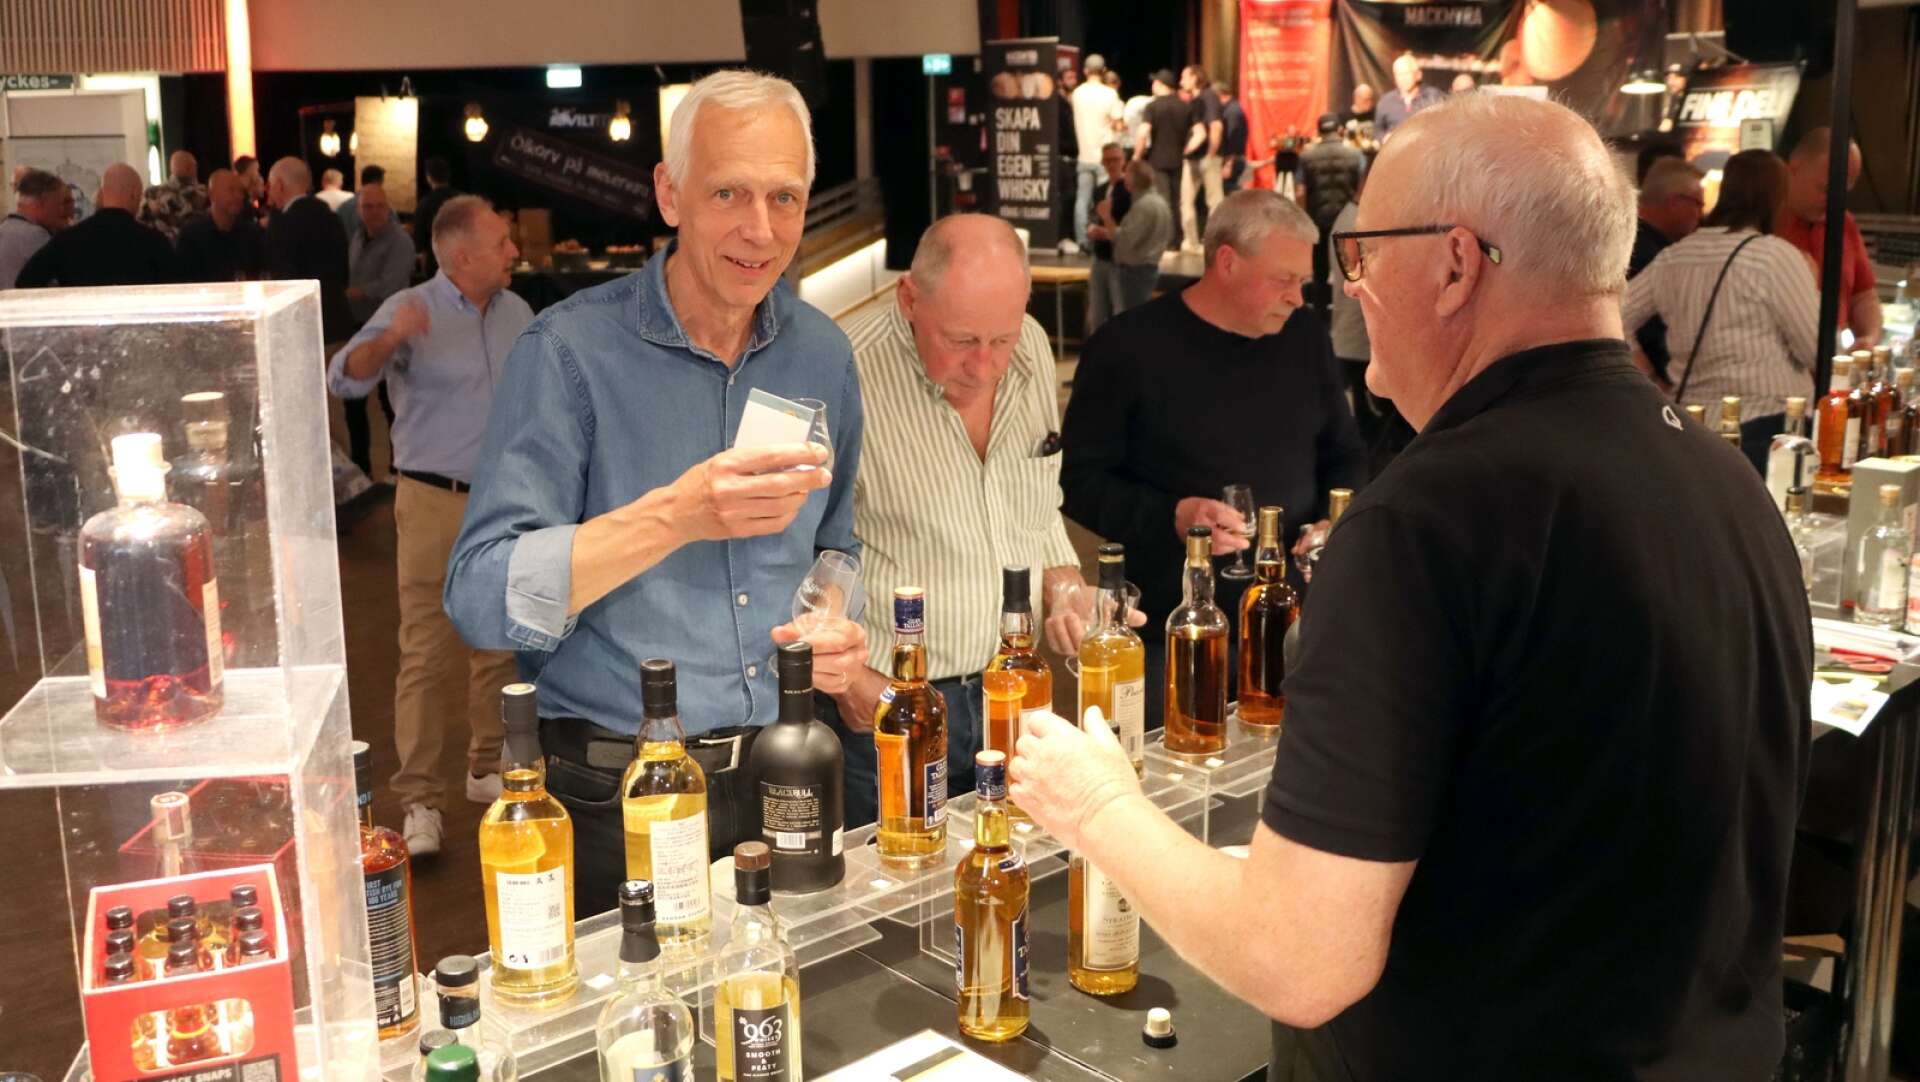 Många kom till Valhall när öl- och whiskymässa öppnade på fredagskvällen.
Stig-Göran Dennisson smakade på en rökig whisky som Uno Karlsson, Granqvist, rekommenderade.